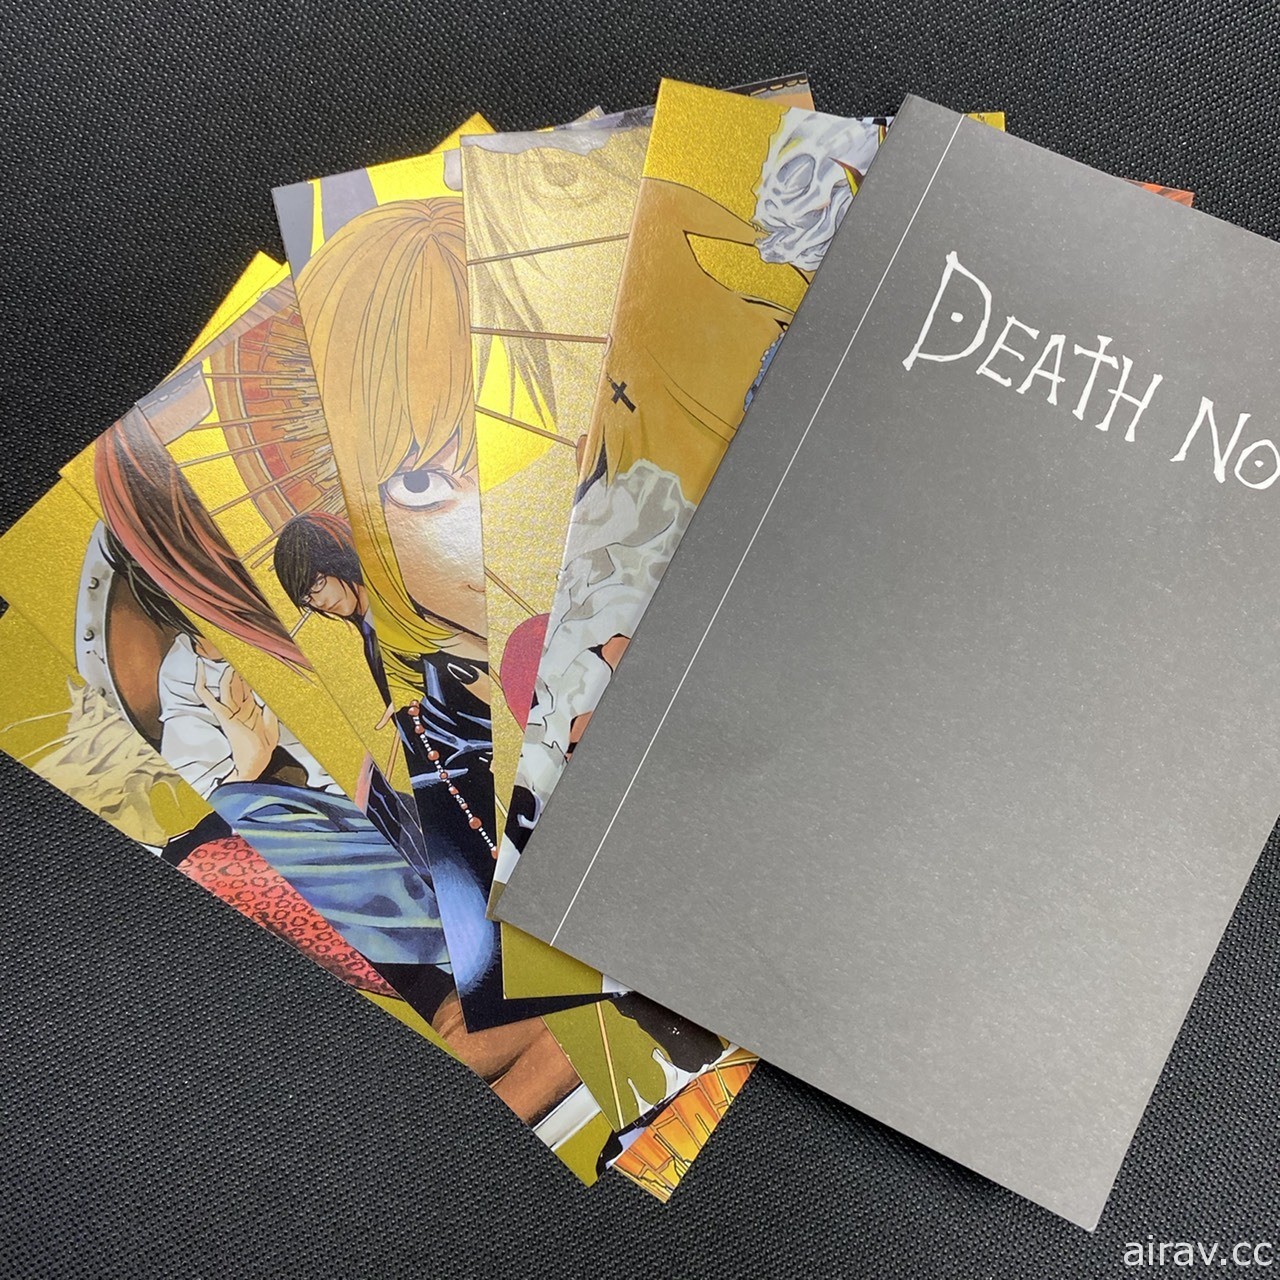 《死亡笔记本》 15 周年纪念在台推出漫画爱藏版